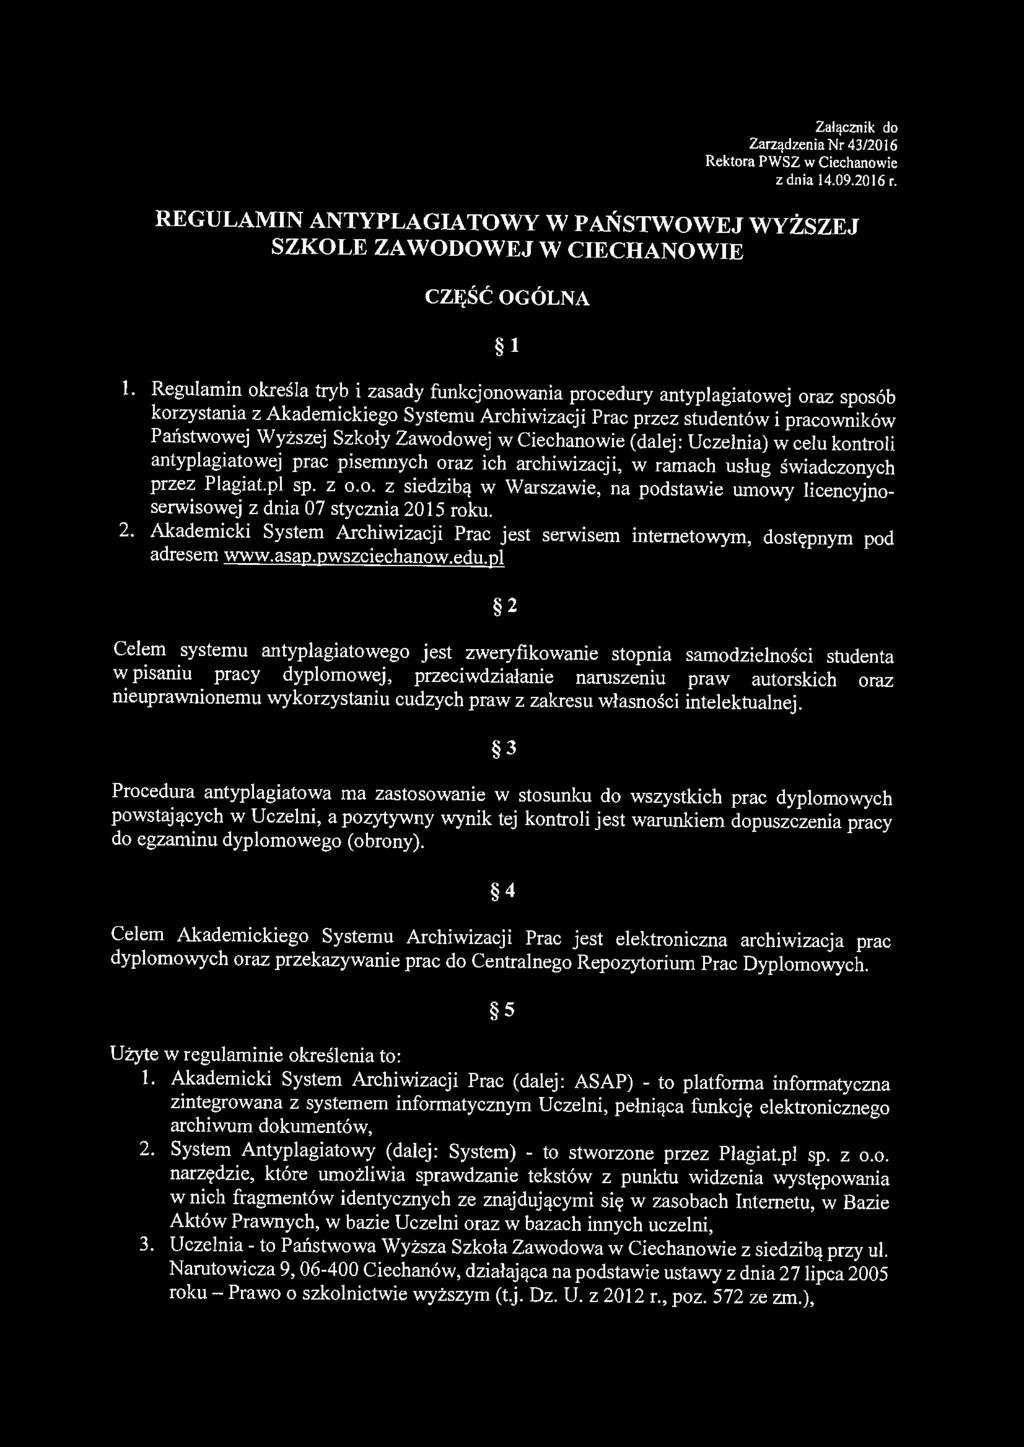 Zawodowej w Ciechanowie (dalej: Uczelnia) w celu kontroli antyplagiatowej prac pisemnych oraz ich archiwizacji, w ramach usług świadczonych przez Plagiat.pl sp. z o.o. z siedzibą w Warszawie, na podstawie umowy licencyjnoserwisowej z dnia 07 stycznia 2015 roku.